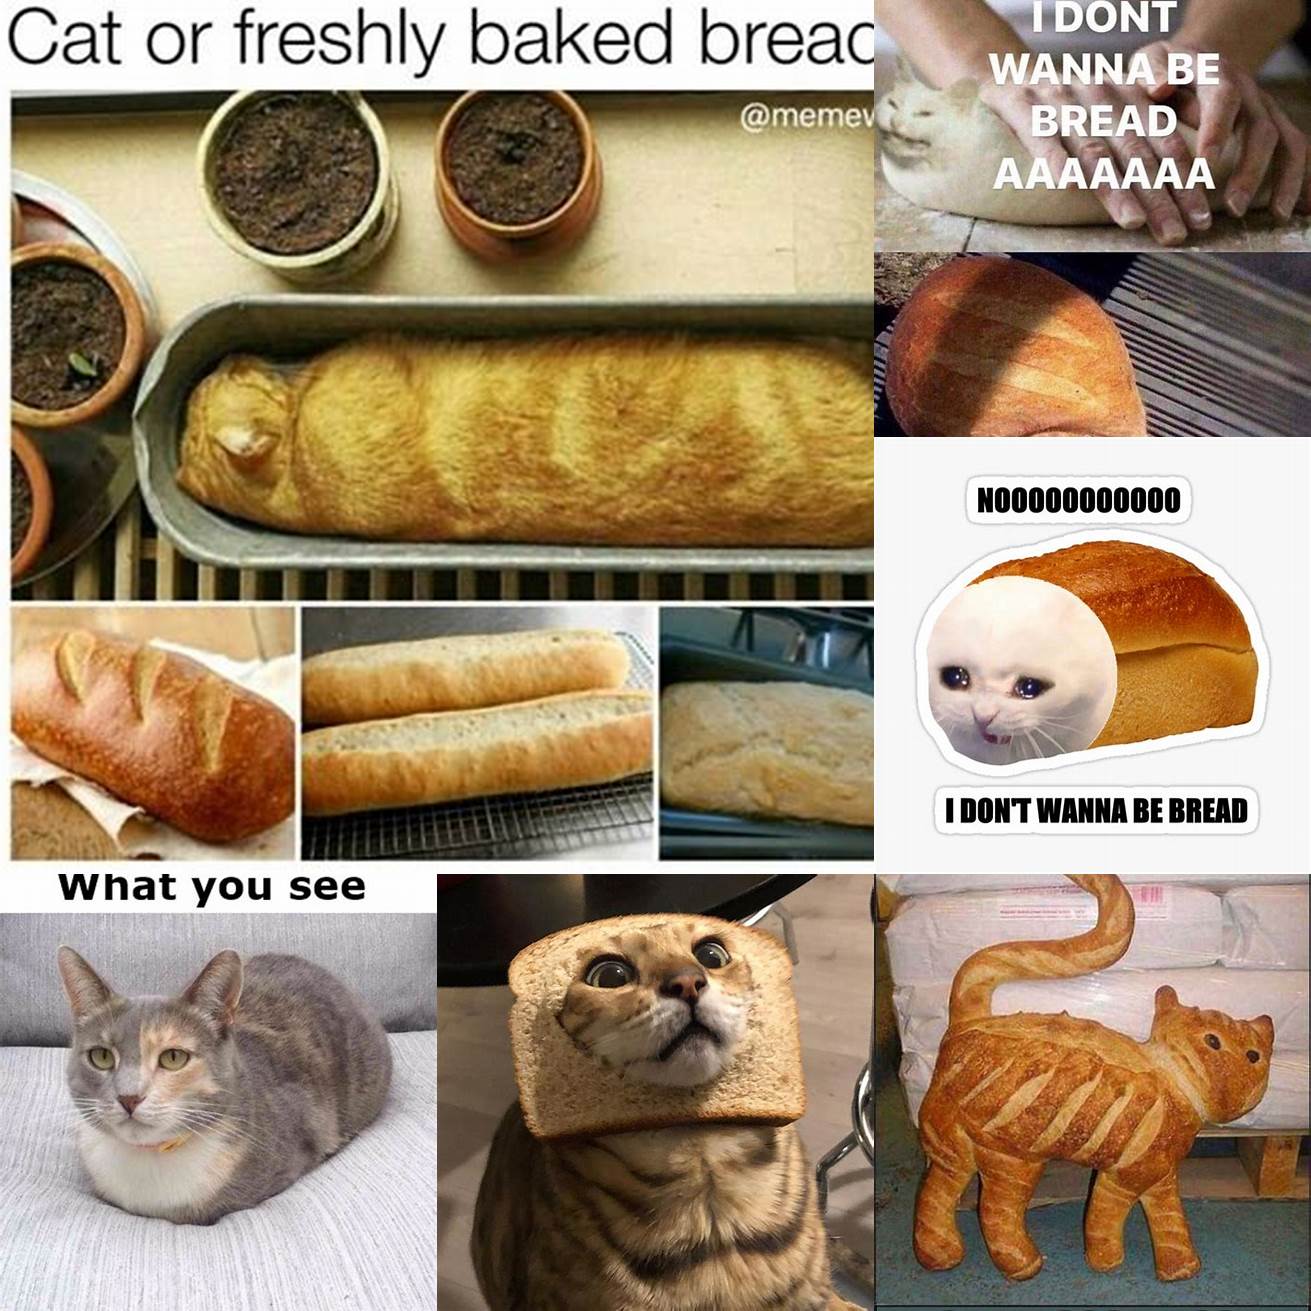 Cat in Bread as a meme within a meme